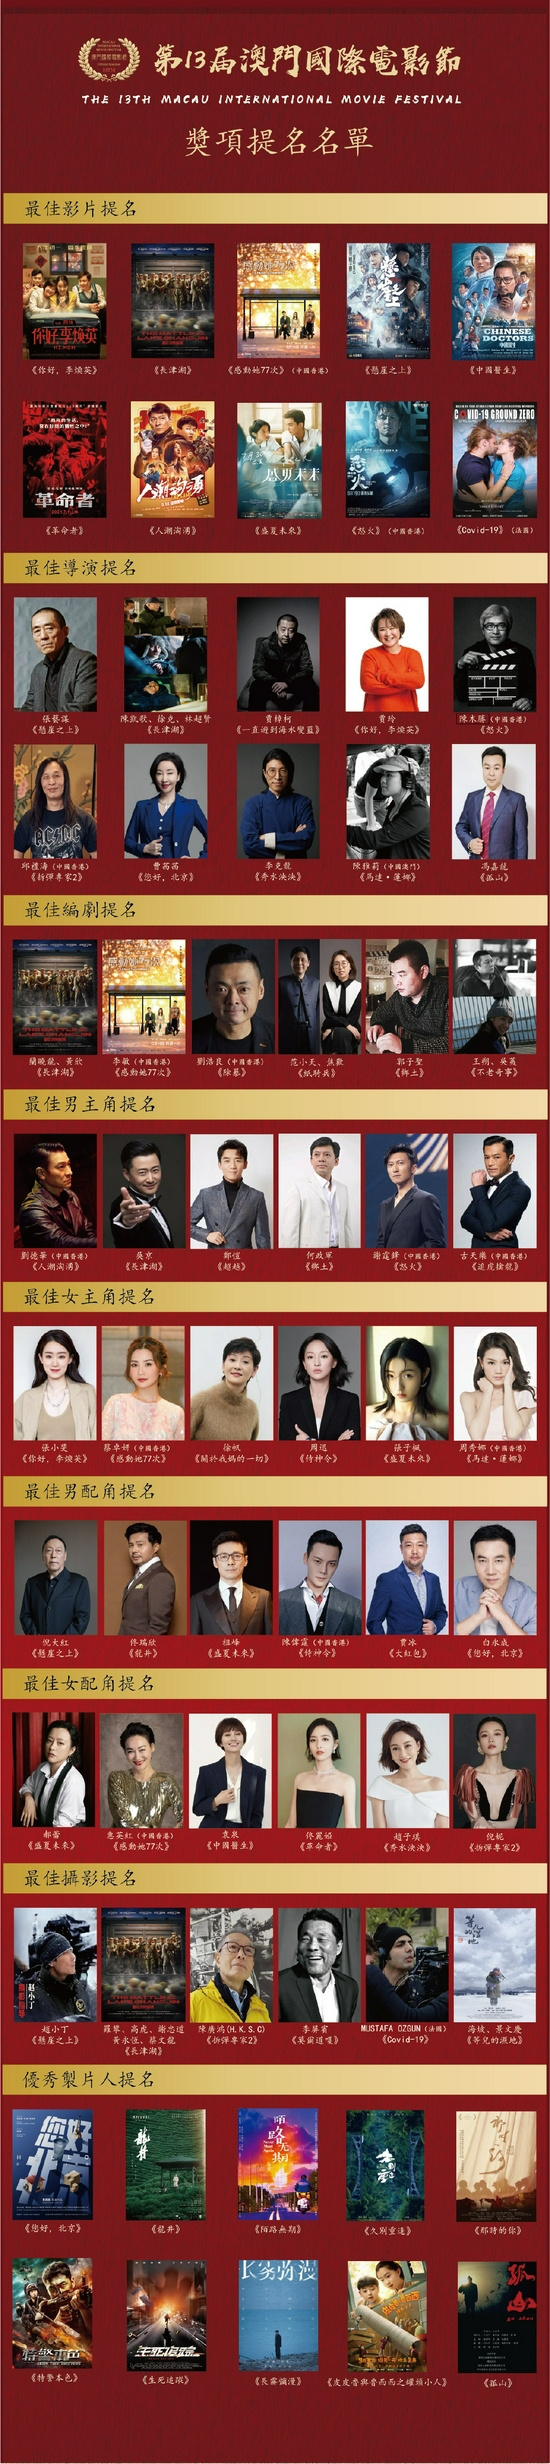 澳门国际电影节公布提名名单 《长津湖》提名5项大奖领跑